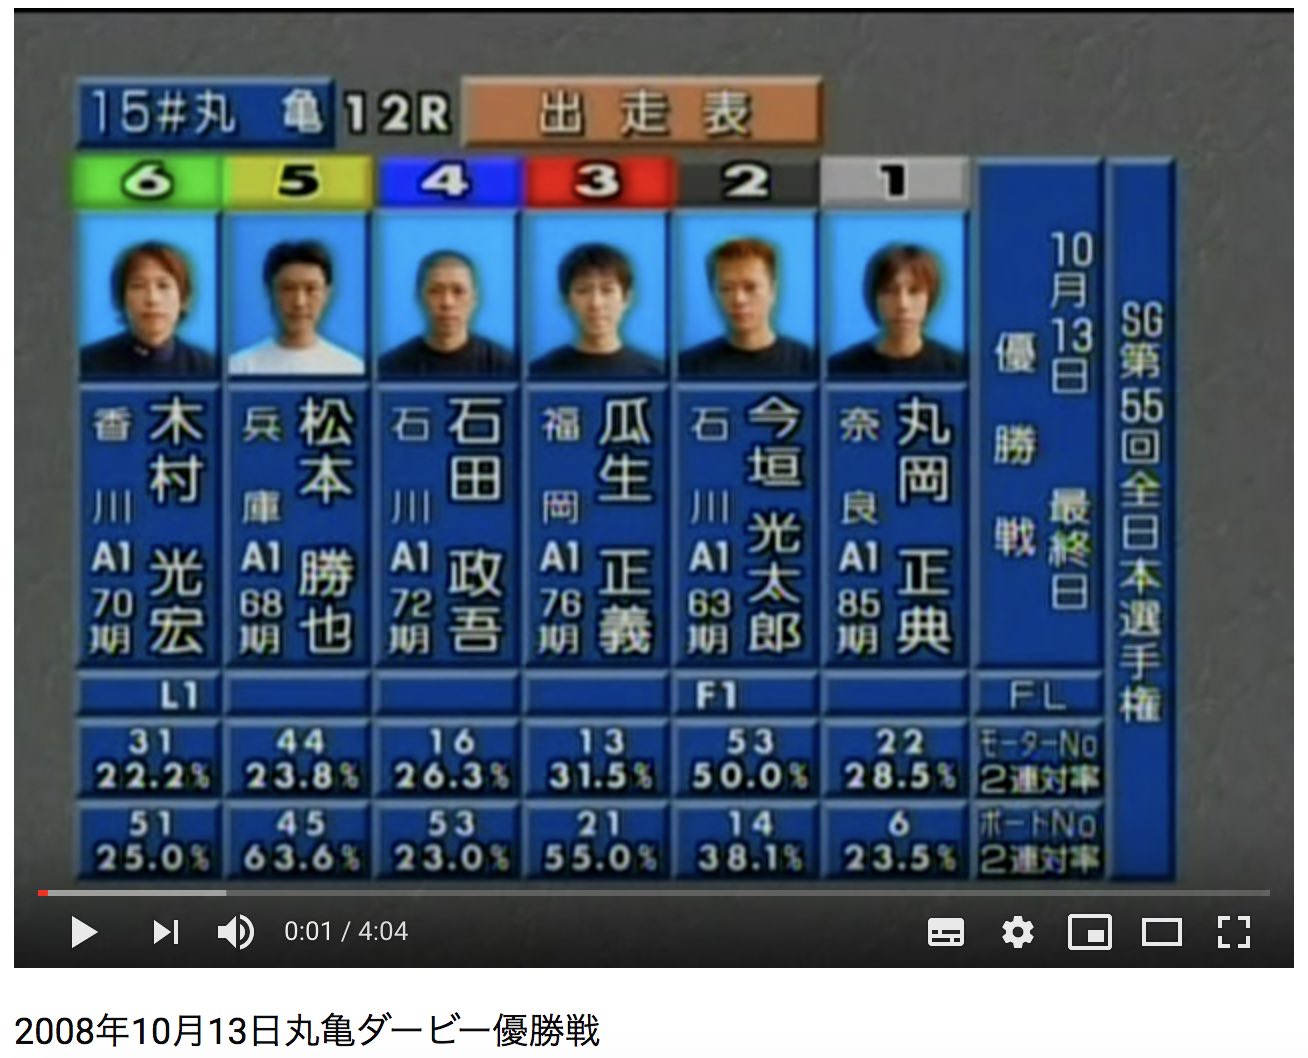 2008年 10月13日、第55回全日本選手権（ダービー）優勝戦は競艇の名勝負